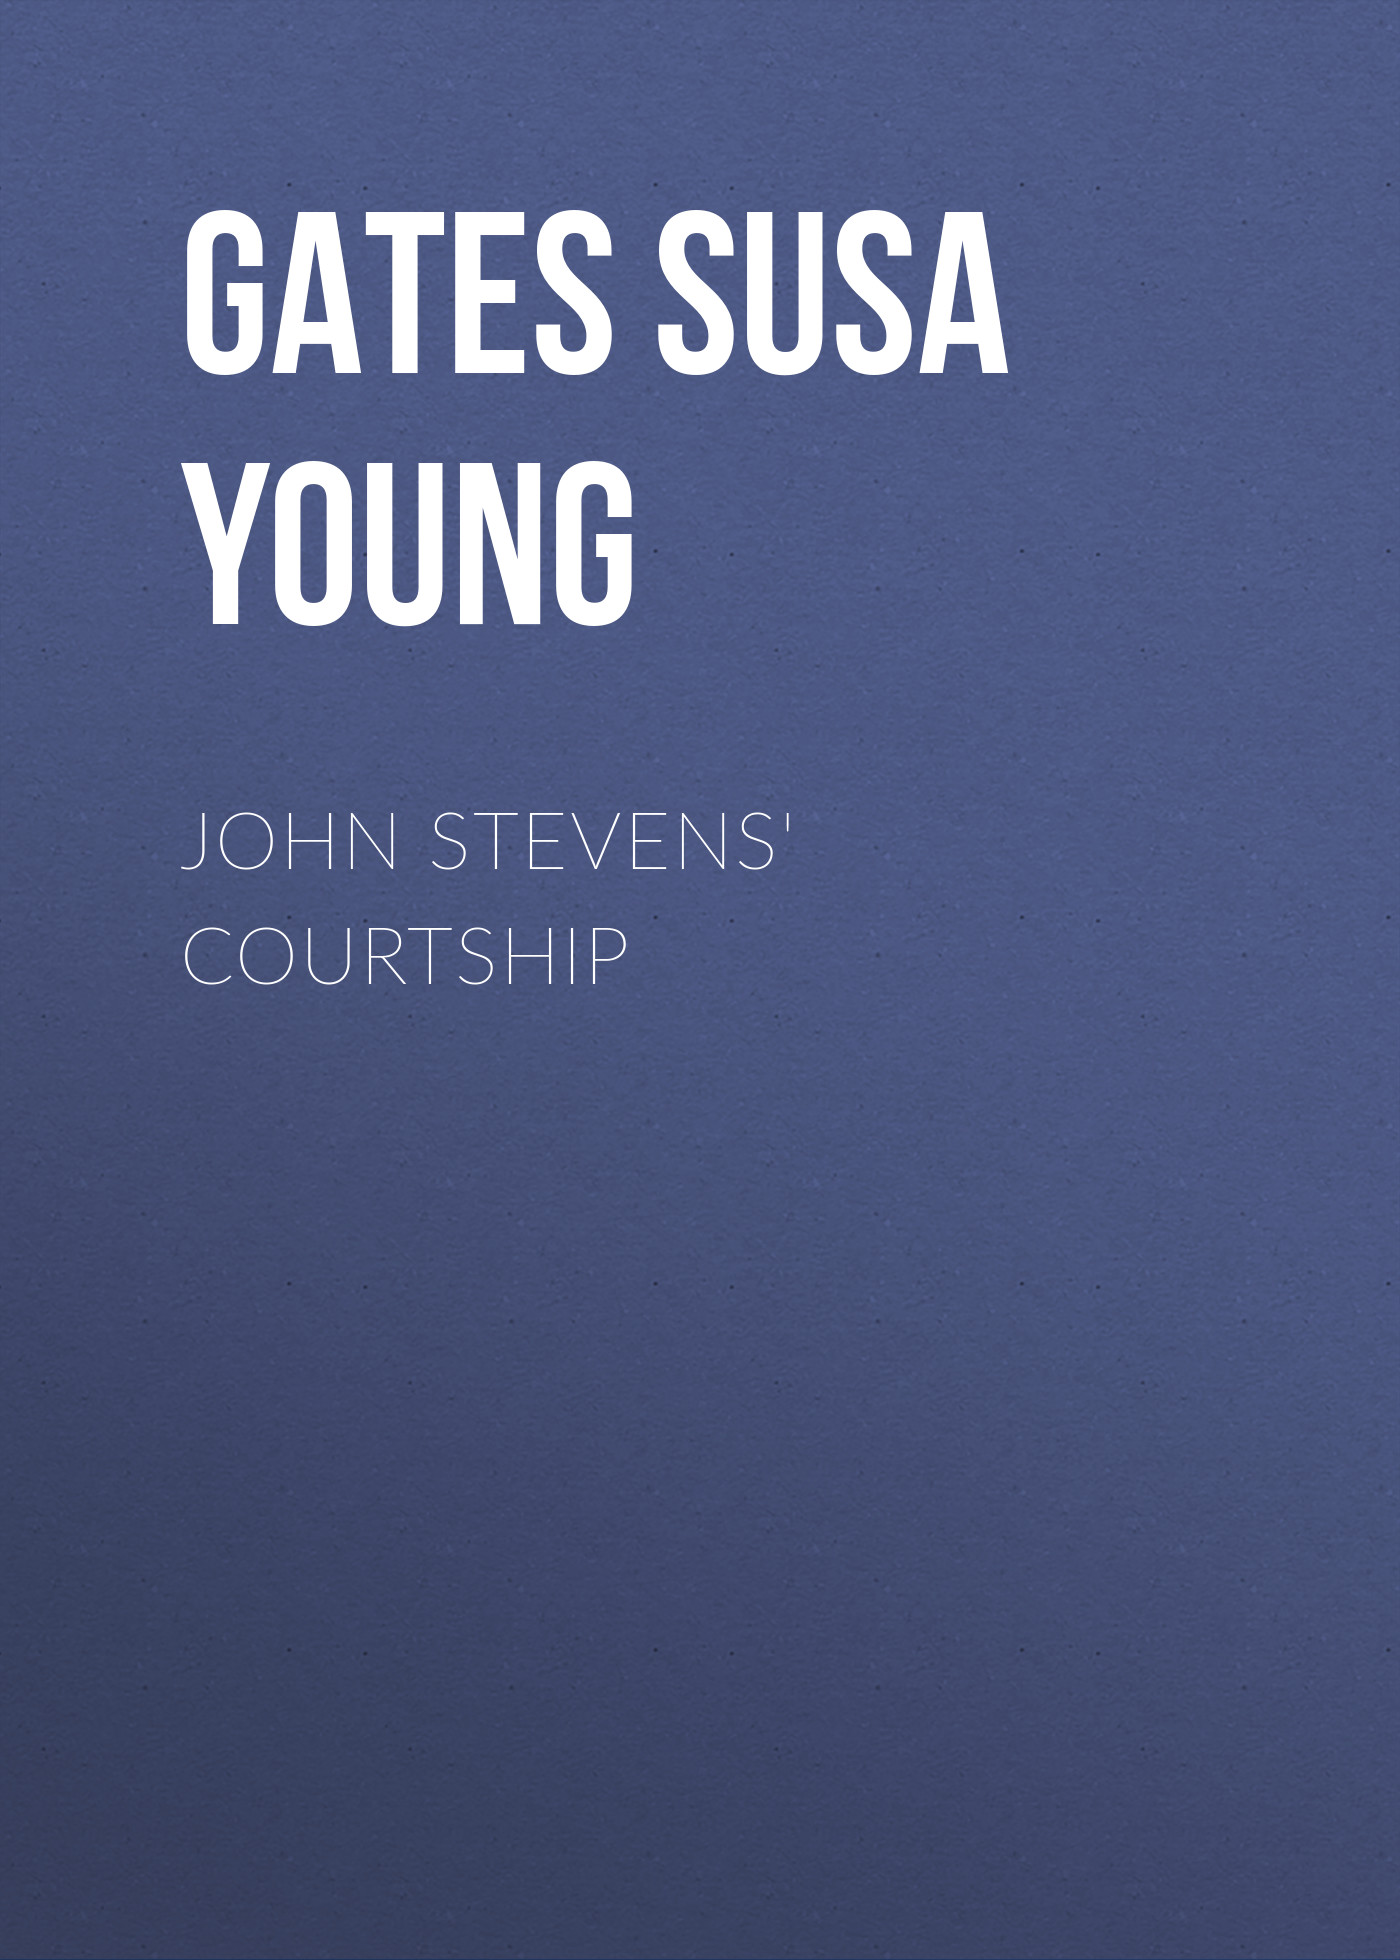 Книга John Stevens' Courtship из серии , созданная Susa Gates, может относится к жанру Зарубежная старинная литература, Зарубежная классика. Стоимость электронной книги John Stevens' Courtship с идентификатором 24860547 составляет 0 руб.